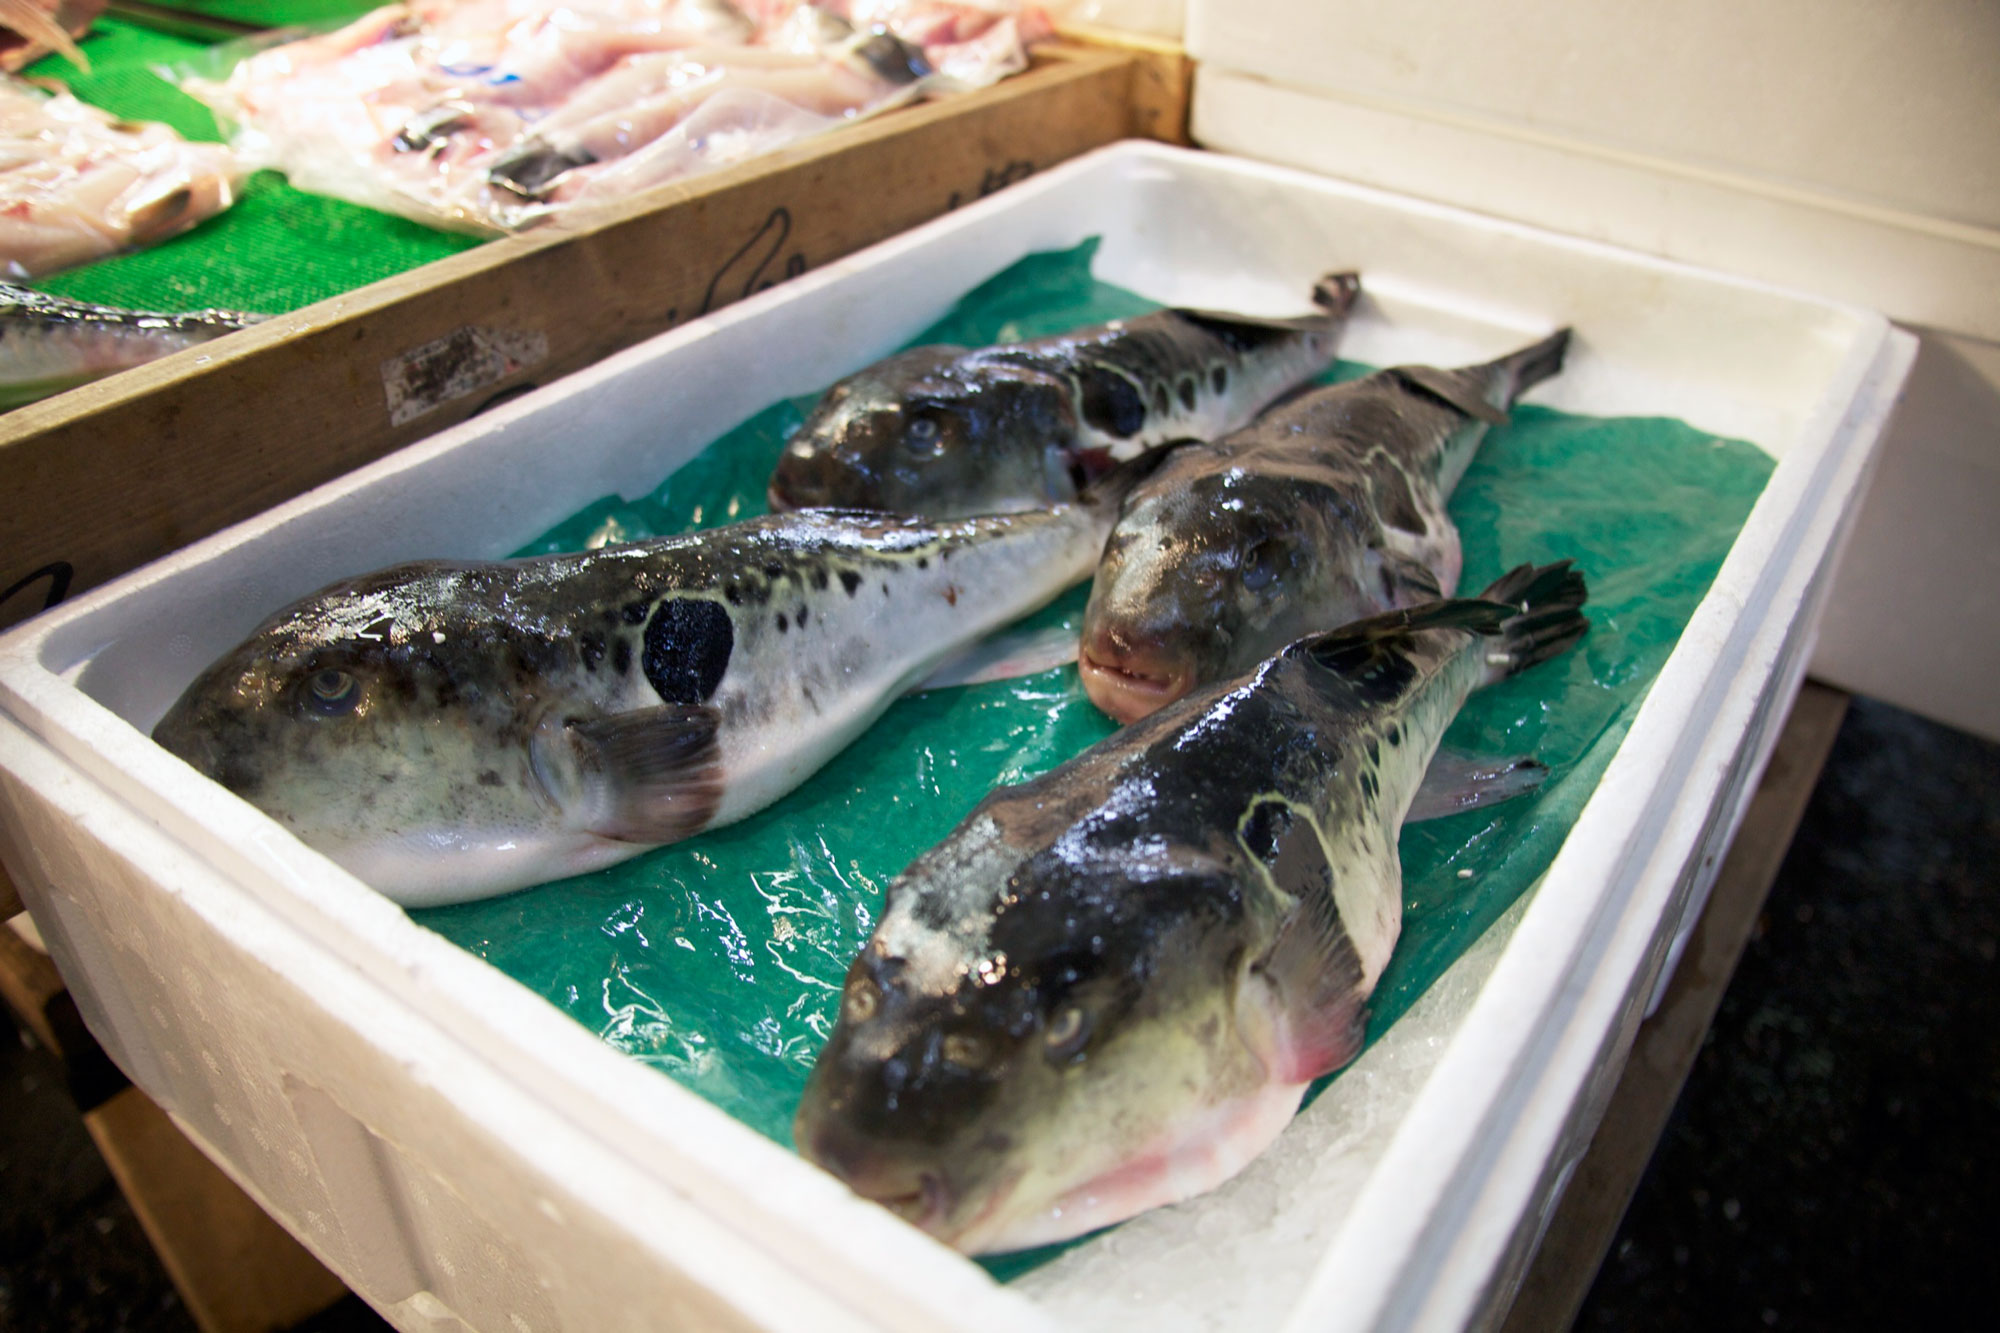 fugu fish price